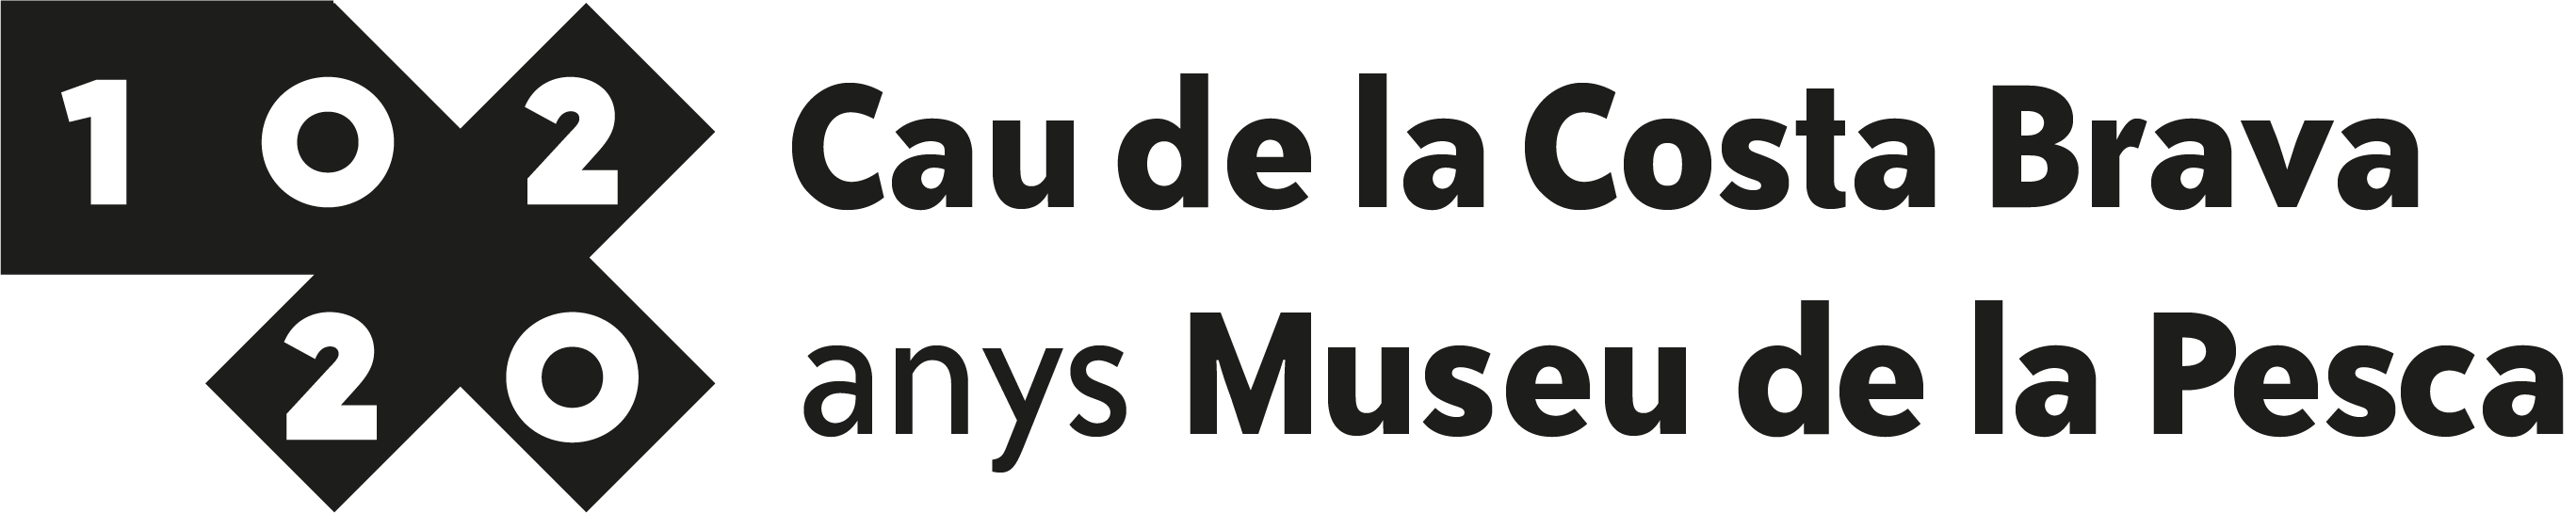 Logo del centenari del Museu de la Pesca Cau de la Costa Brava